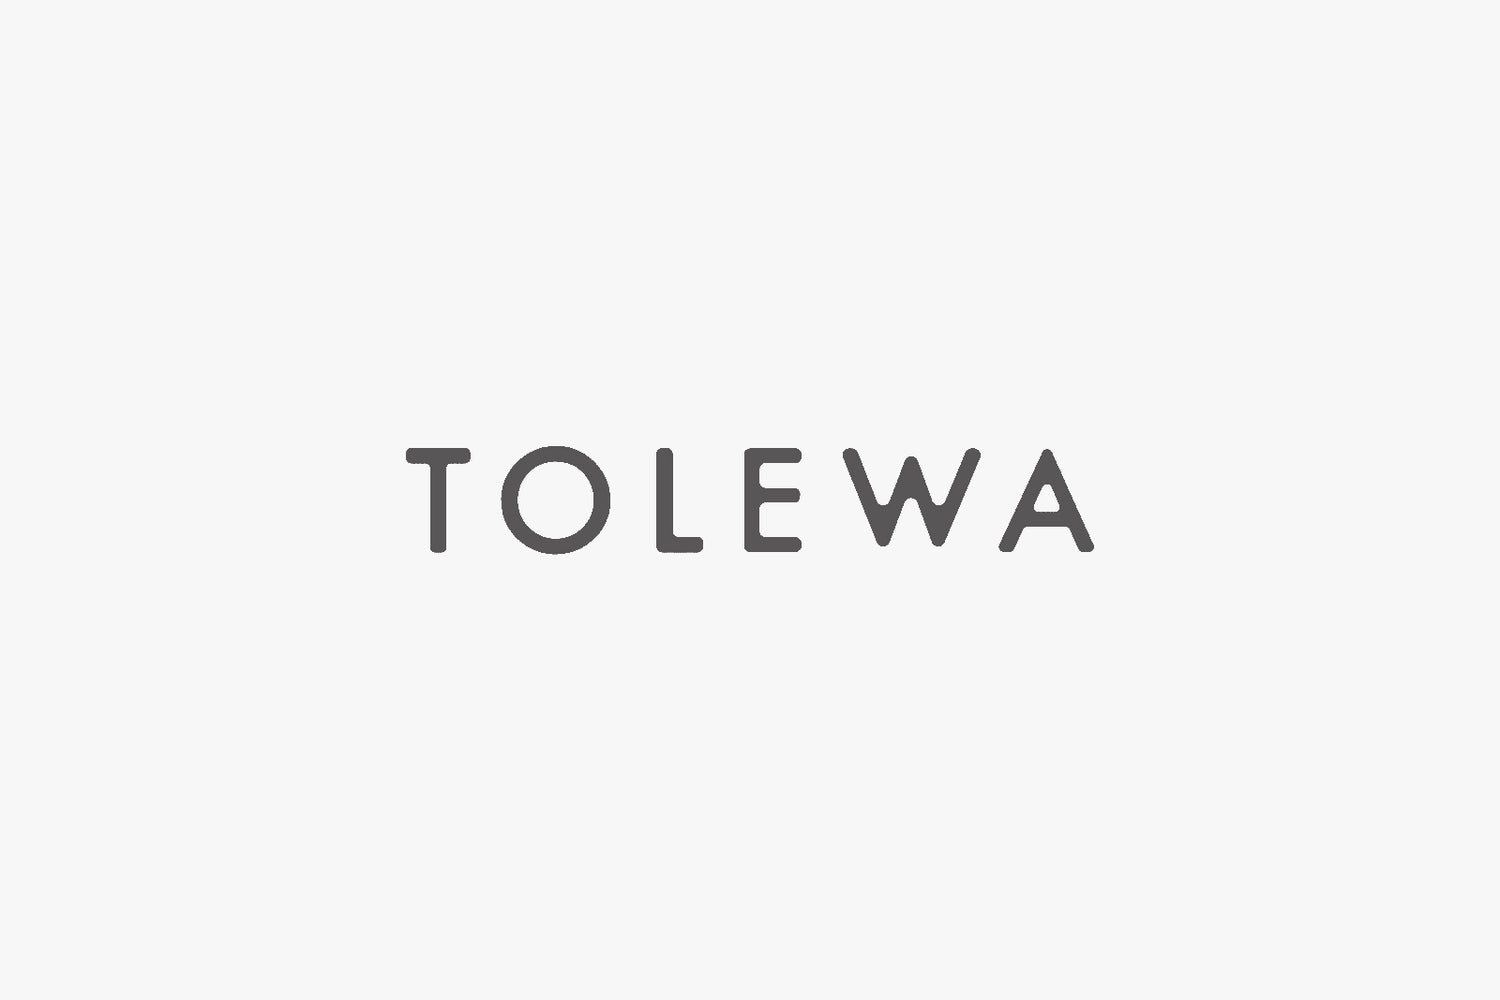 TOLEWA | トレワ